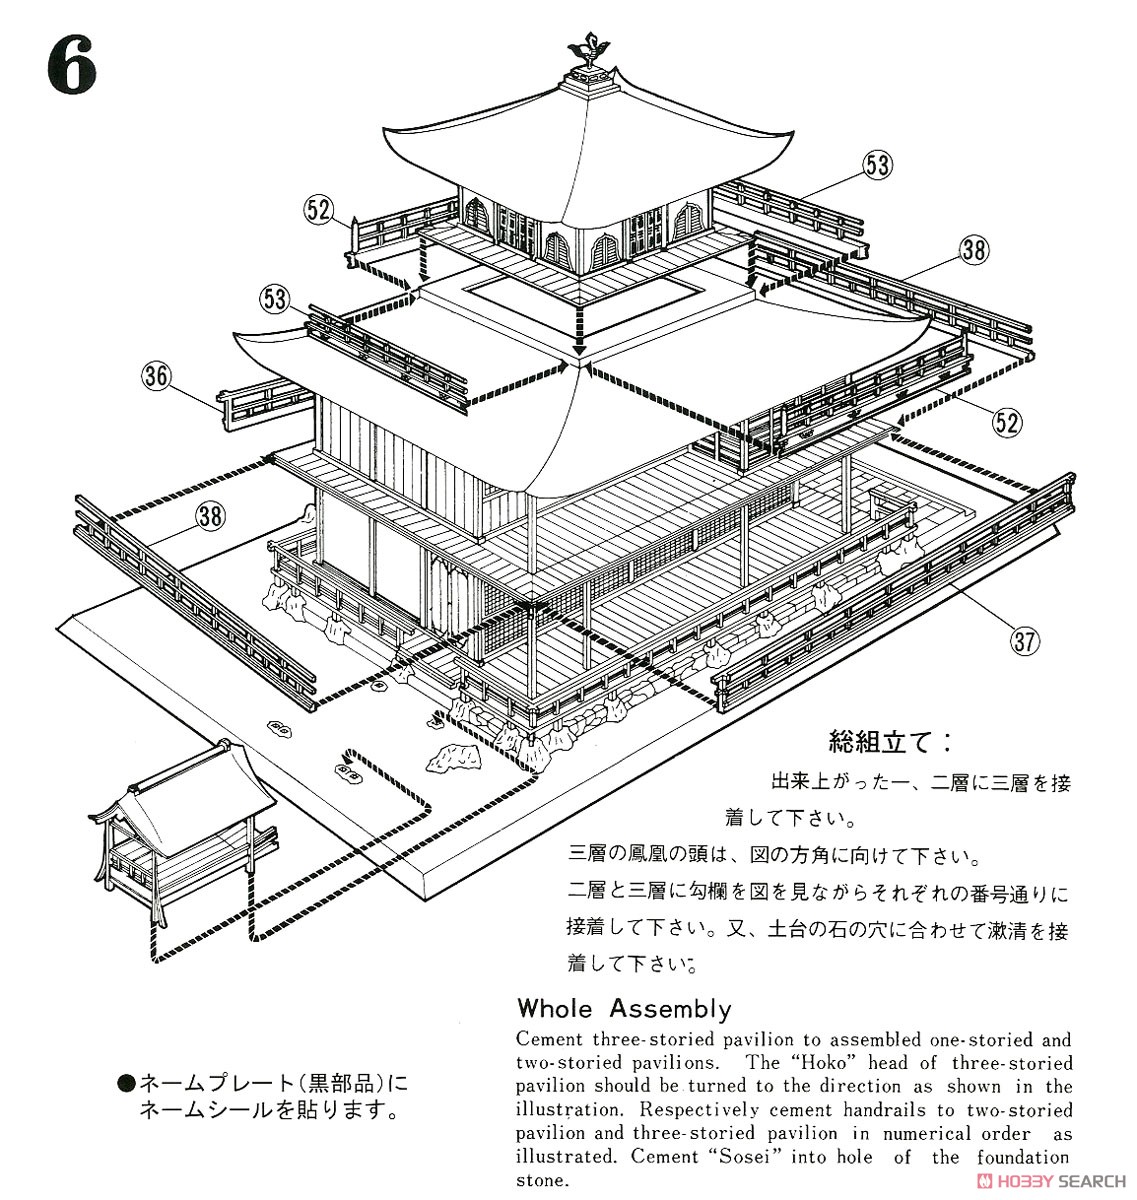 金閣寺 屋根茶色塗装仕様 (プラモデル) 設計図6